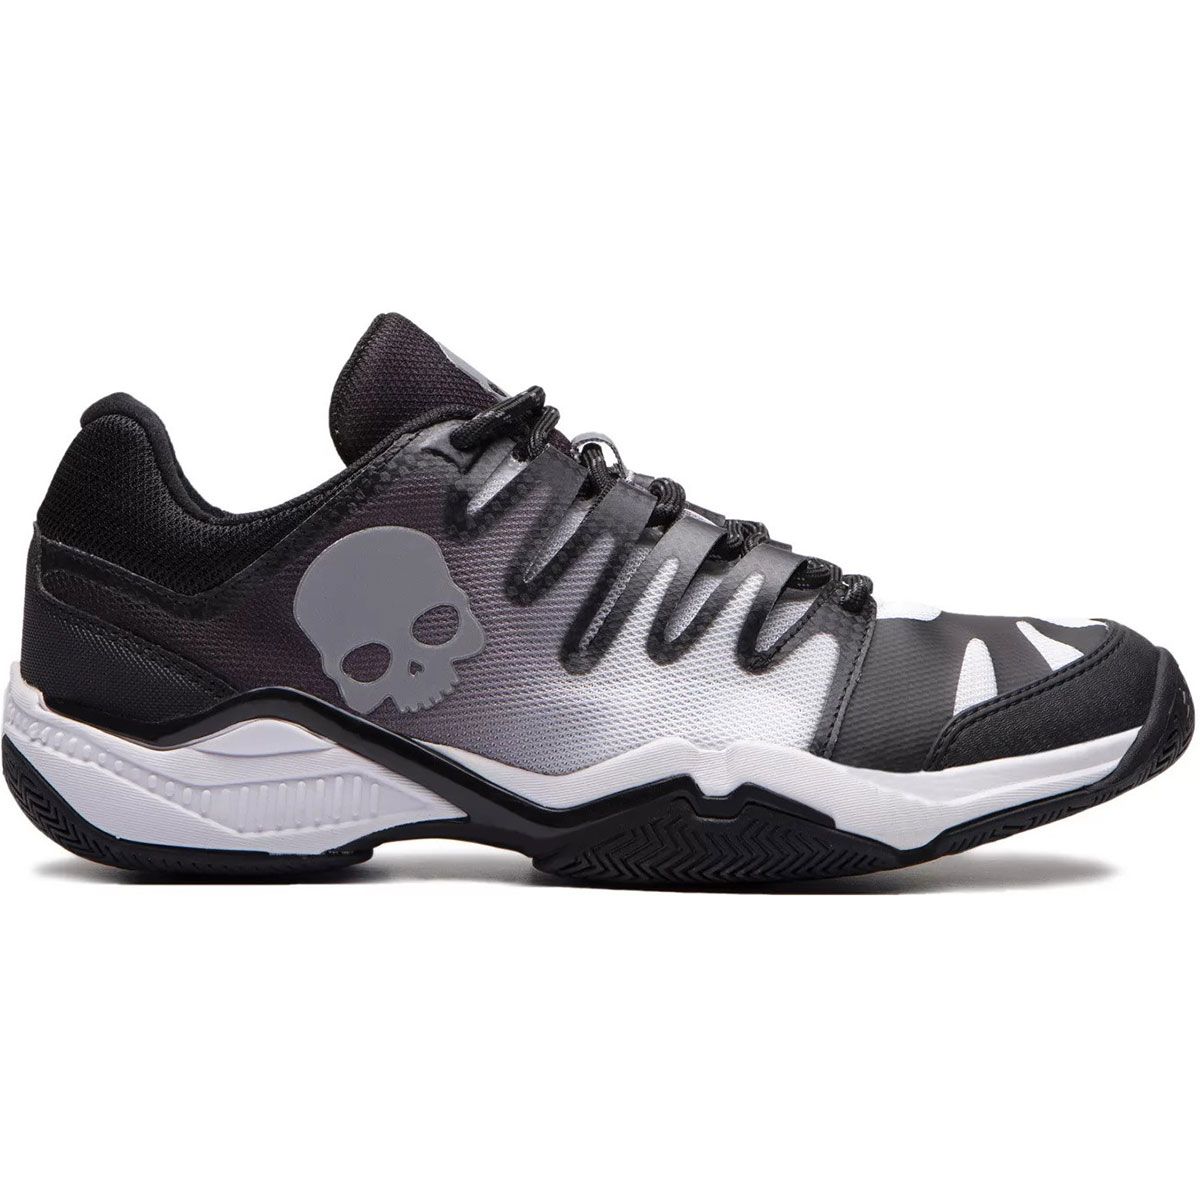 Hydrogen Unisex Tennis Shoes T03014-118